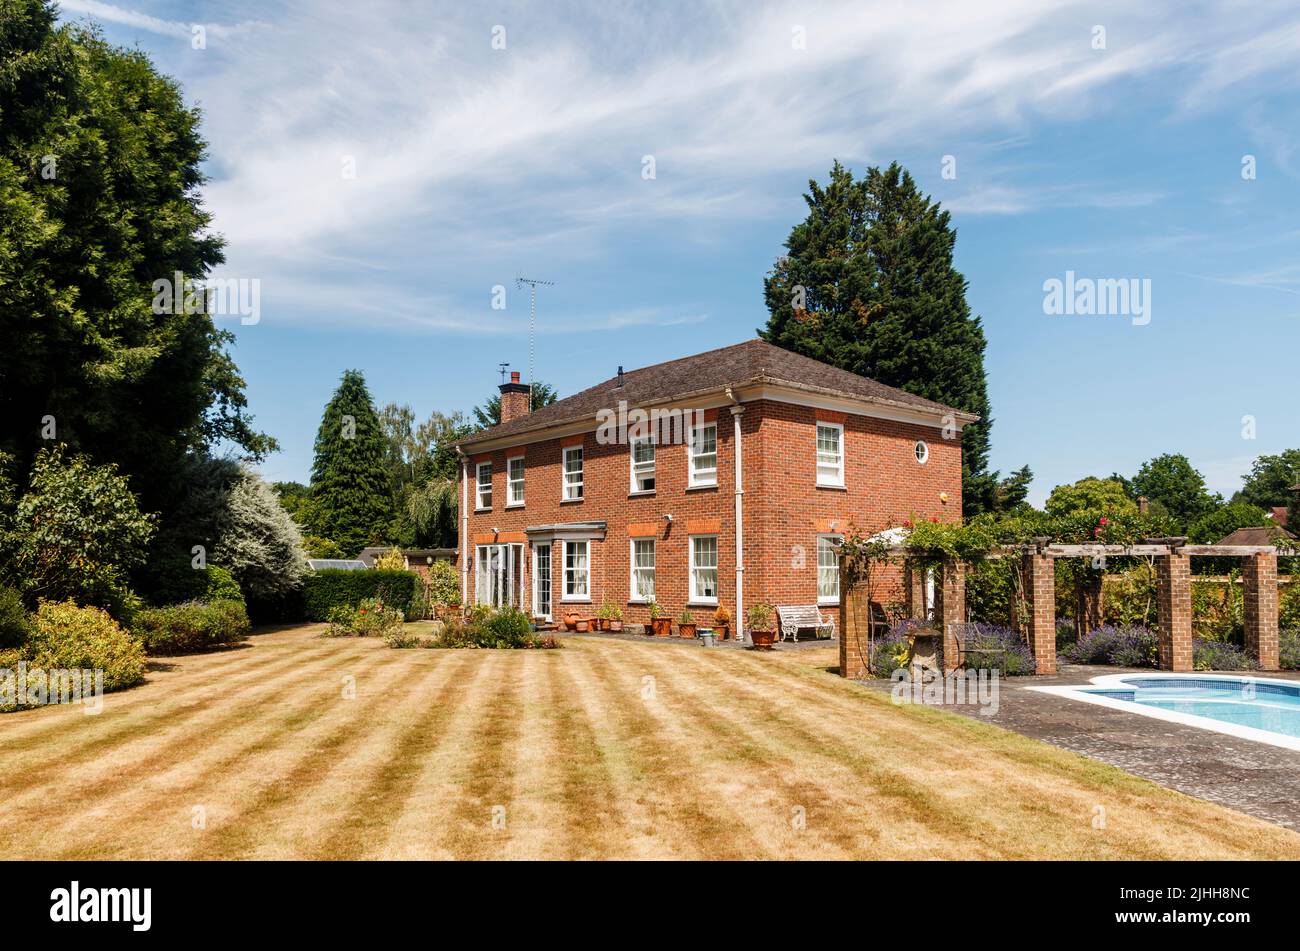 Außenansicht eines Einfamilienhauses, Garten und Schwimmbad, der Rasen mit Streifen, aber braun von Trockenheit und heißen Temperaturen im Sommer, Surrey, Großbritannien Stockfoto